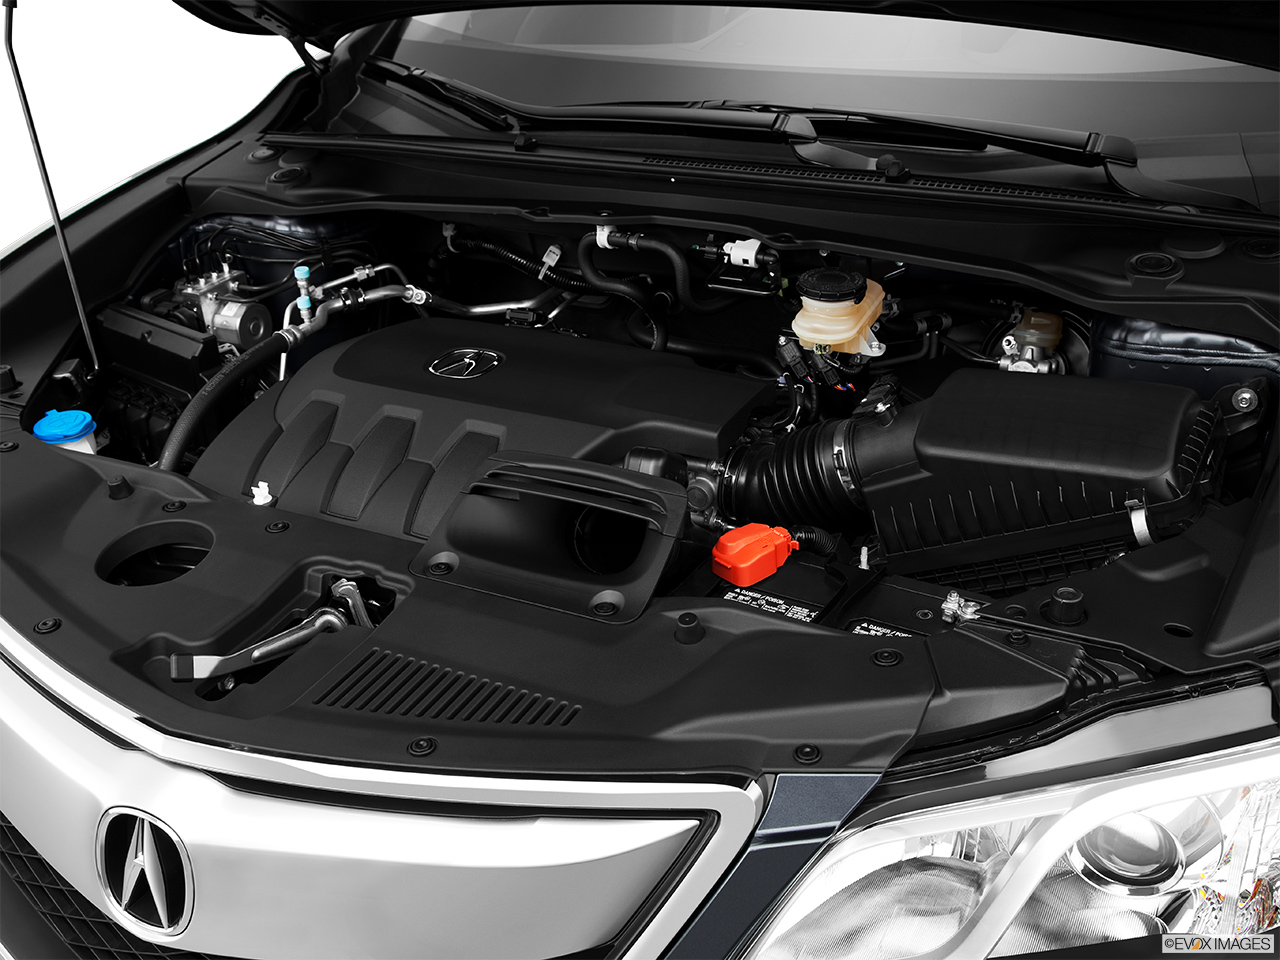 2014 Acura RDX Base Engine. 